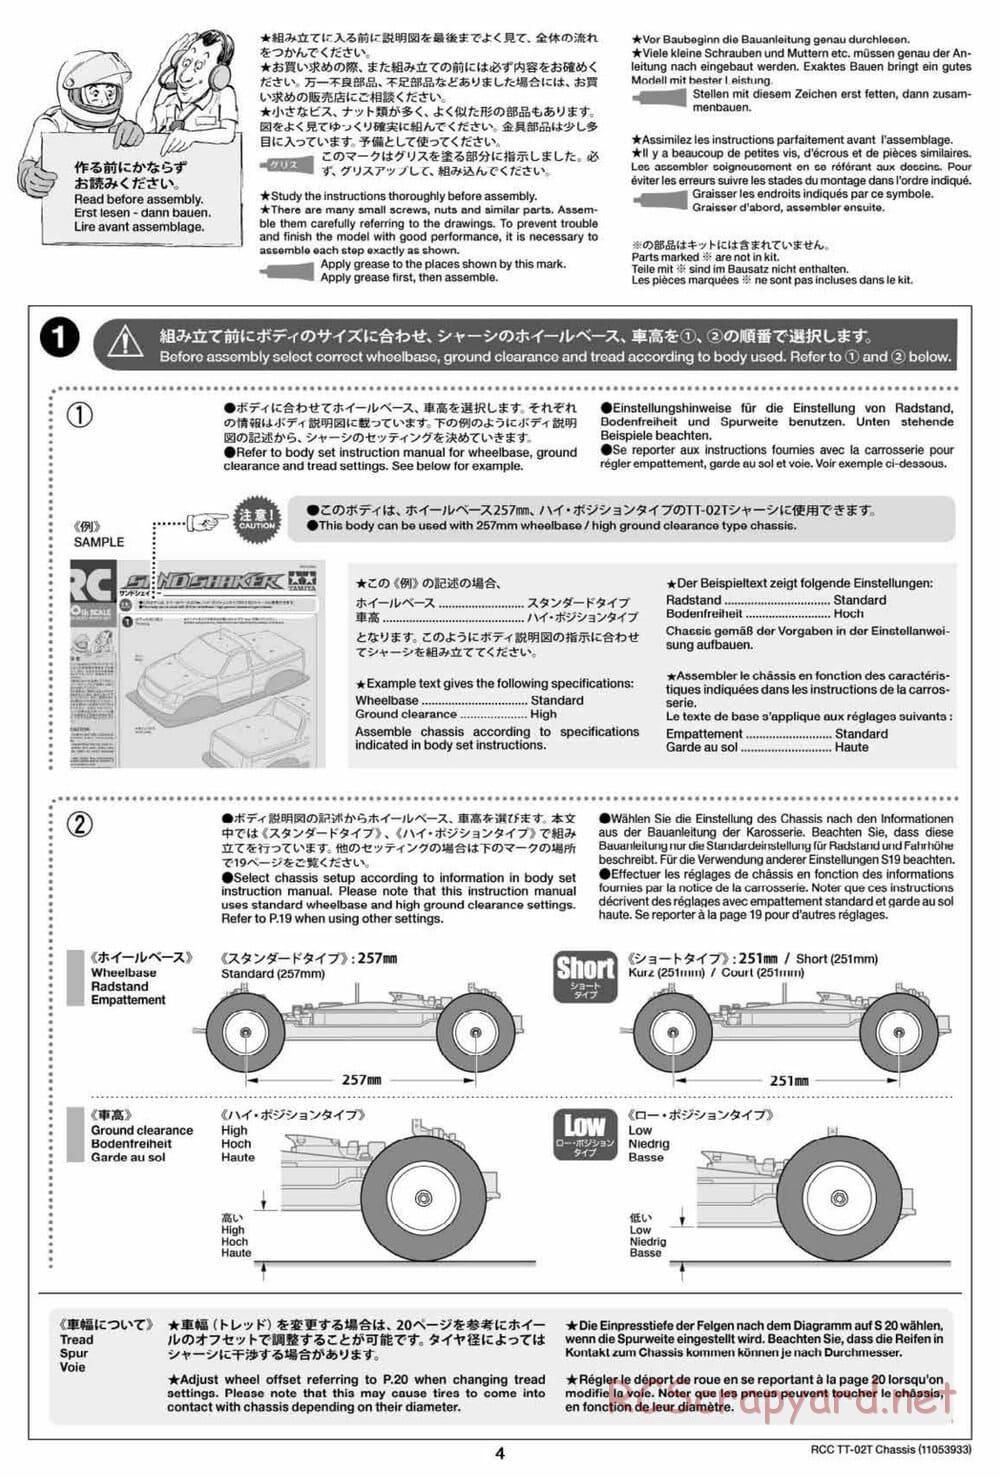 Tamiya - TT-02T Chassis - Manual - Page 5